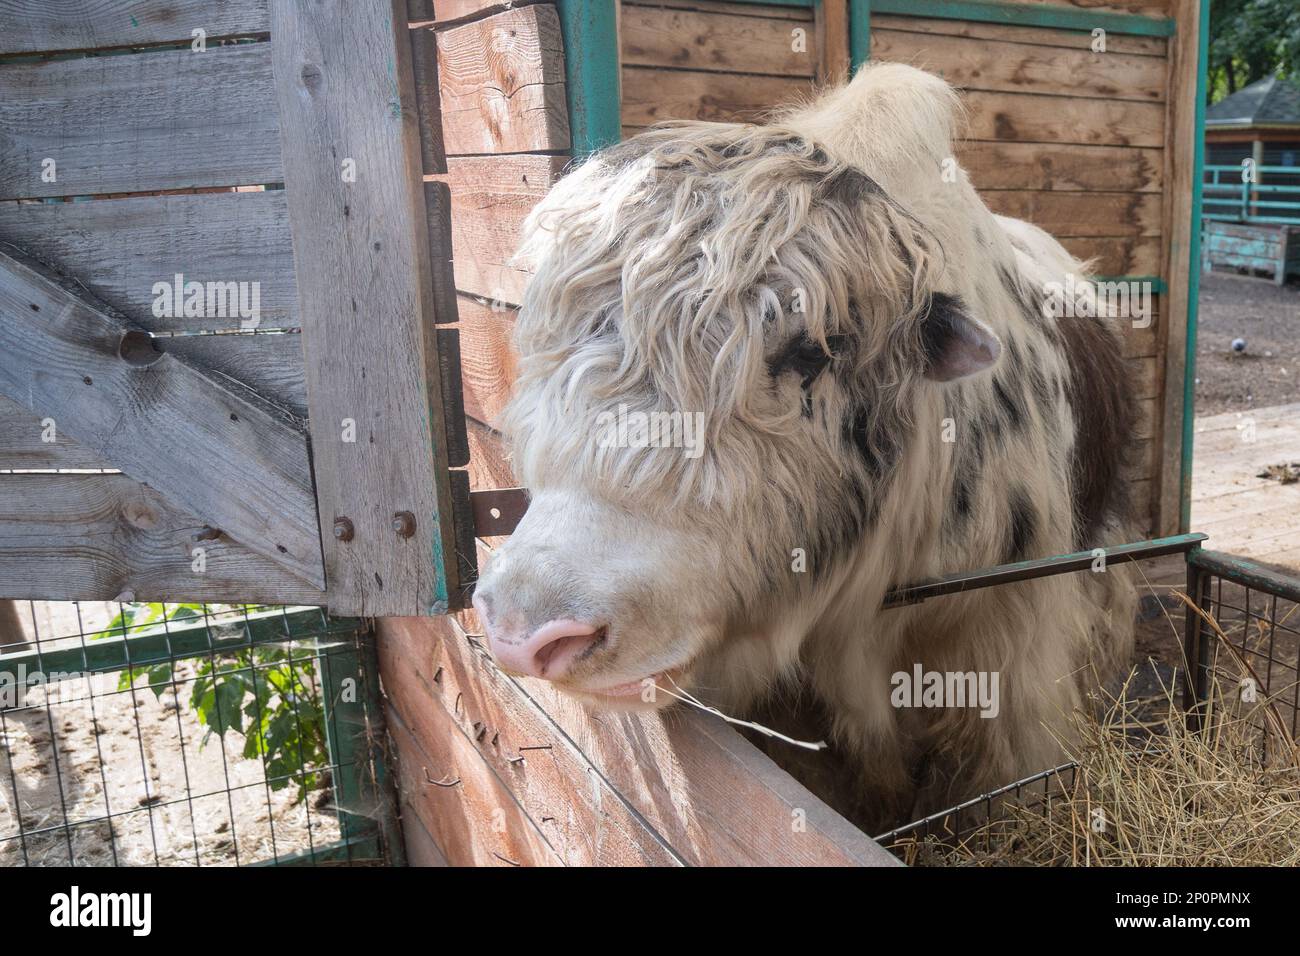 Ein mongolischer Yak in einem offenen Käfig auf einer Farm frisst Heu. Tierporträt Stockfoto